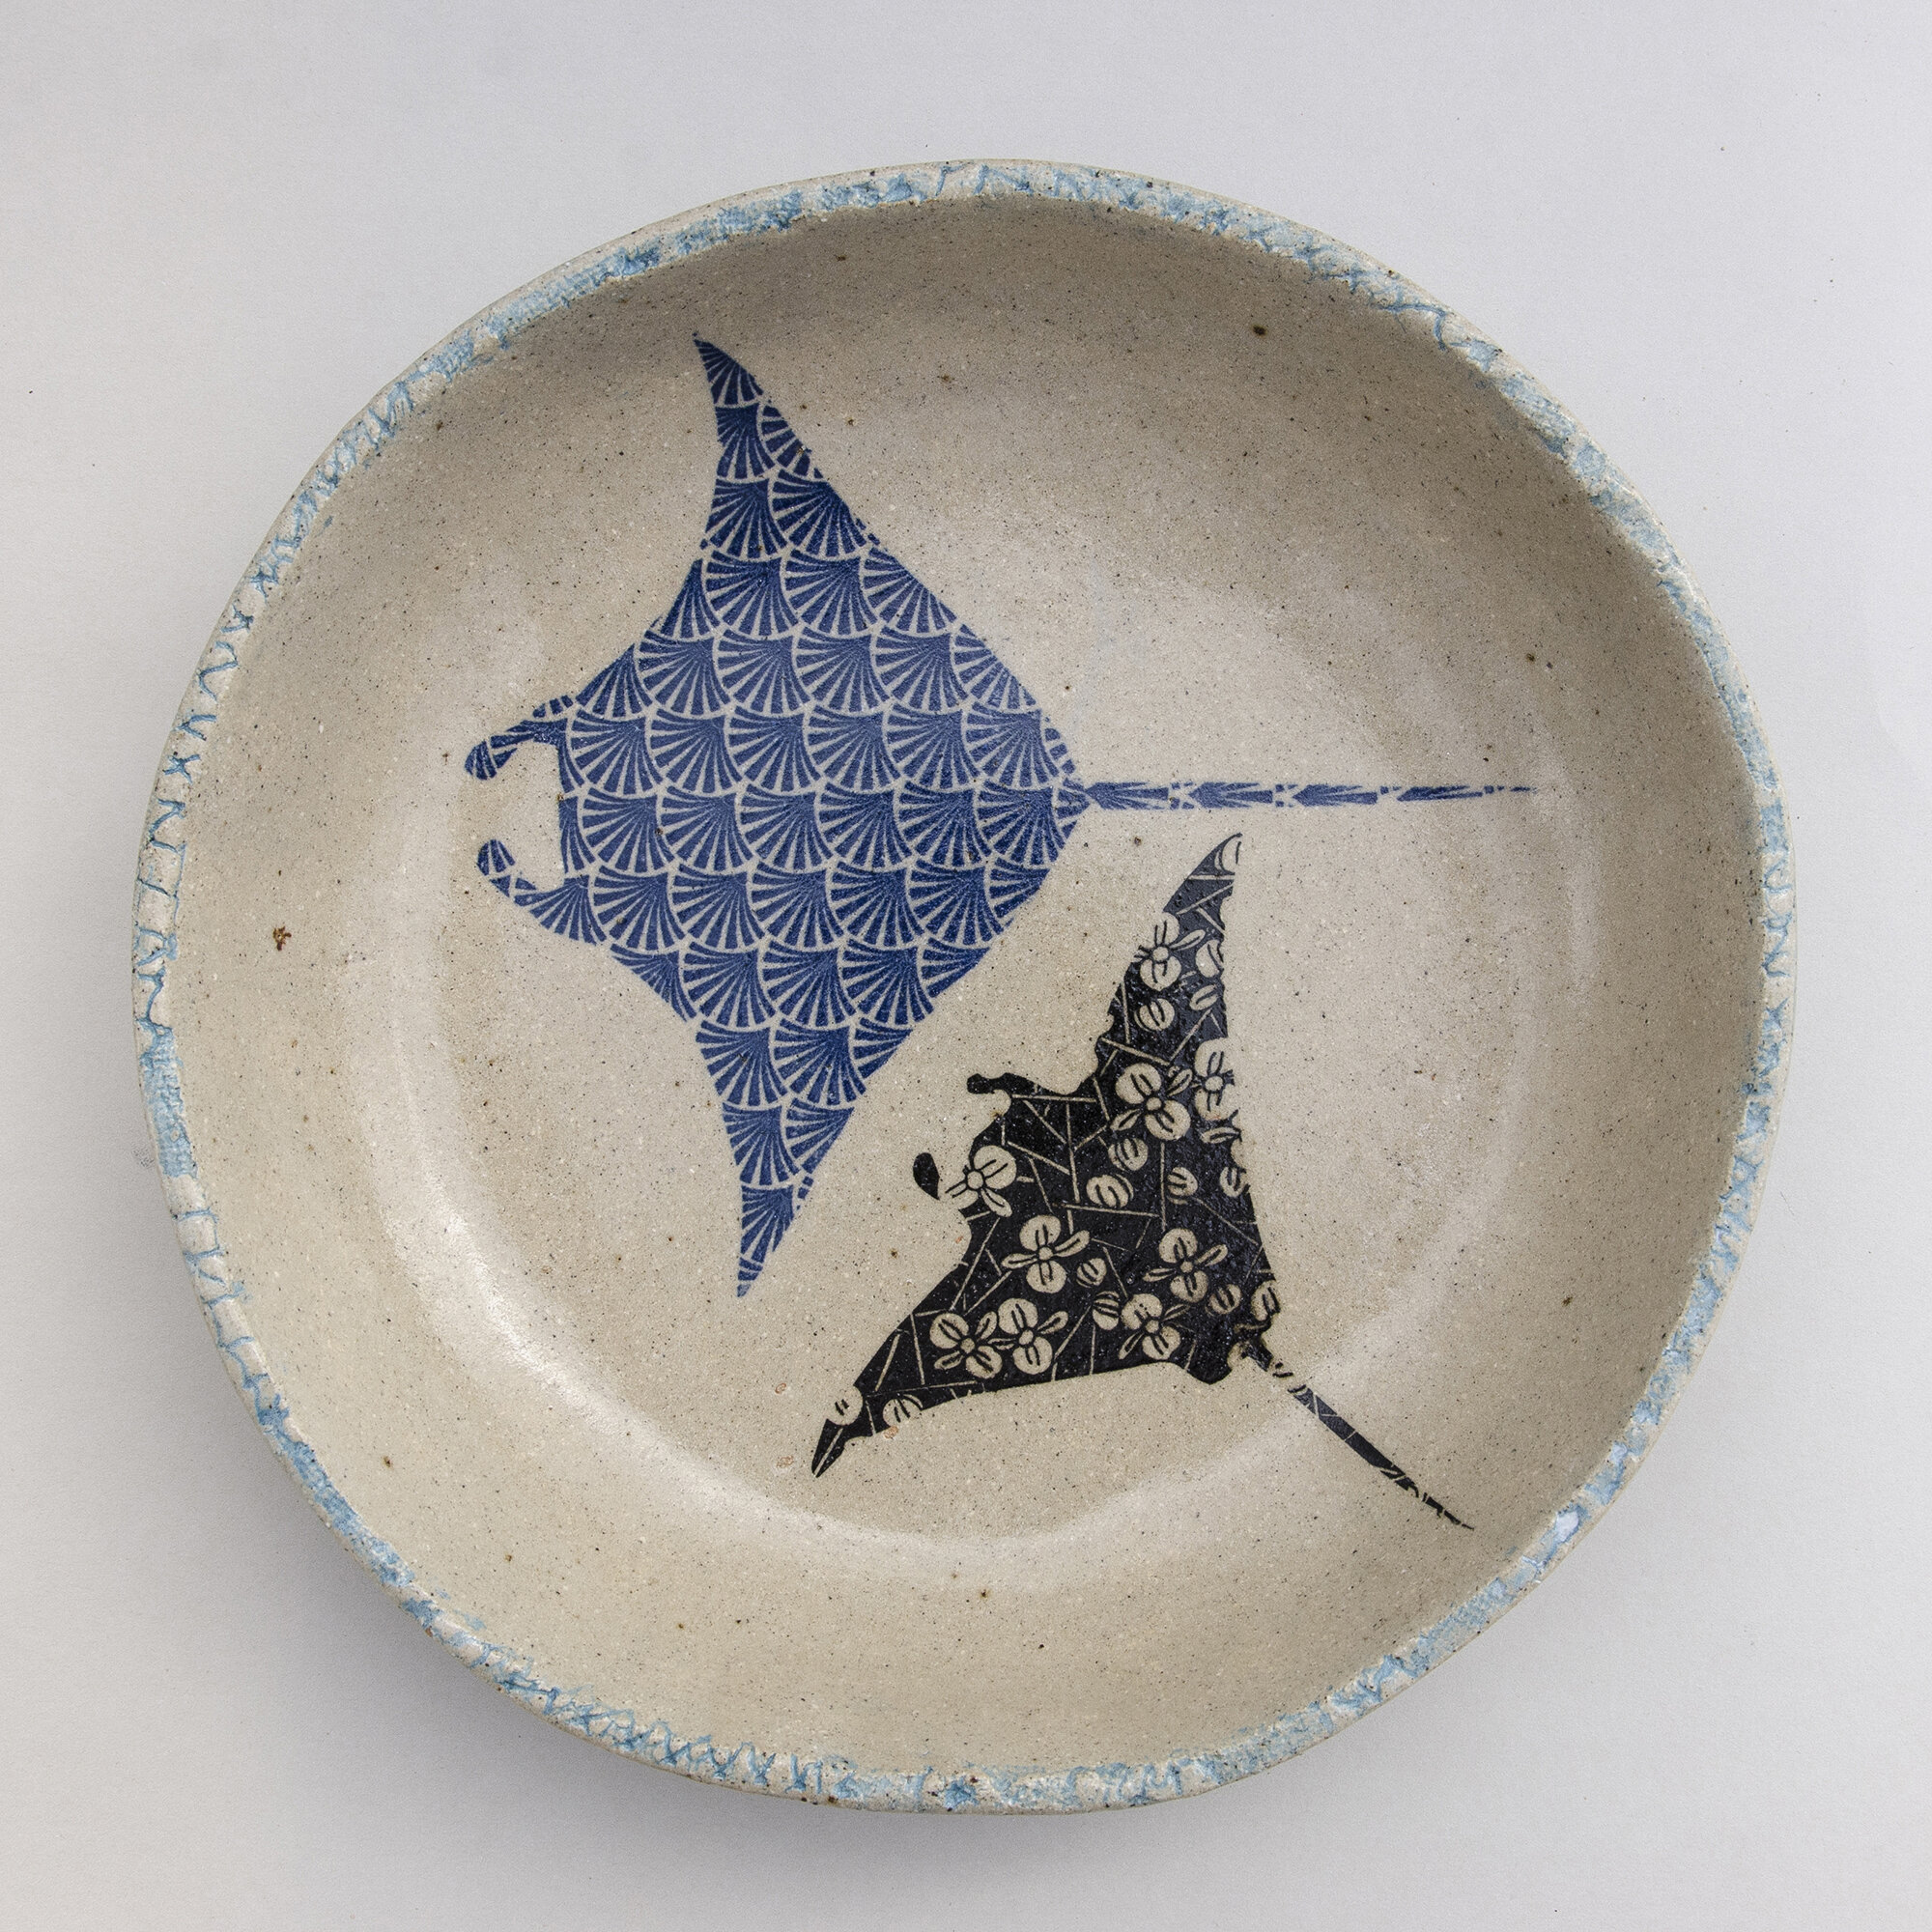 Rivulet Blue Dish Plates Nautical Sea Manta Ray Ceramic Bowls Ceramics Australia Handmade Pottery Stingray Bowl Coastal Ocean